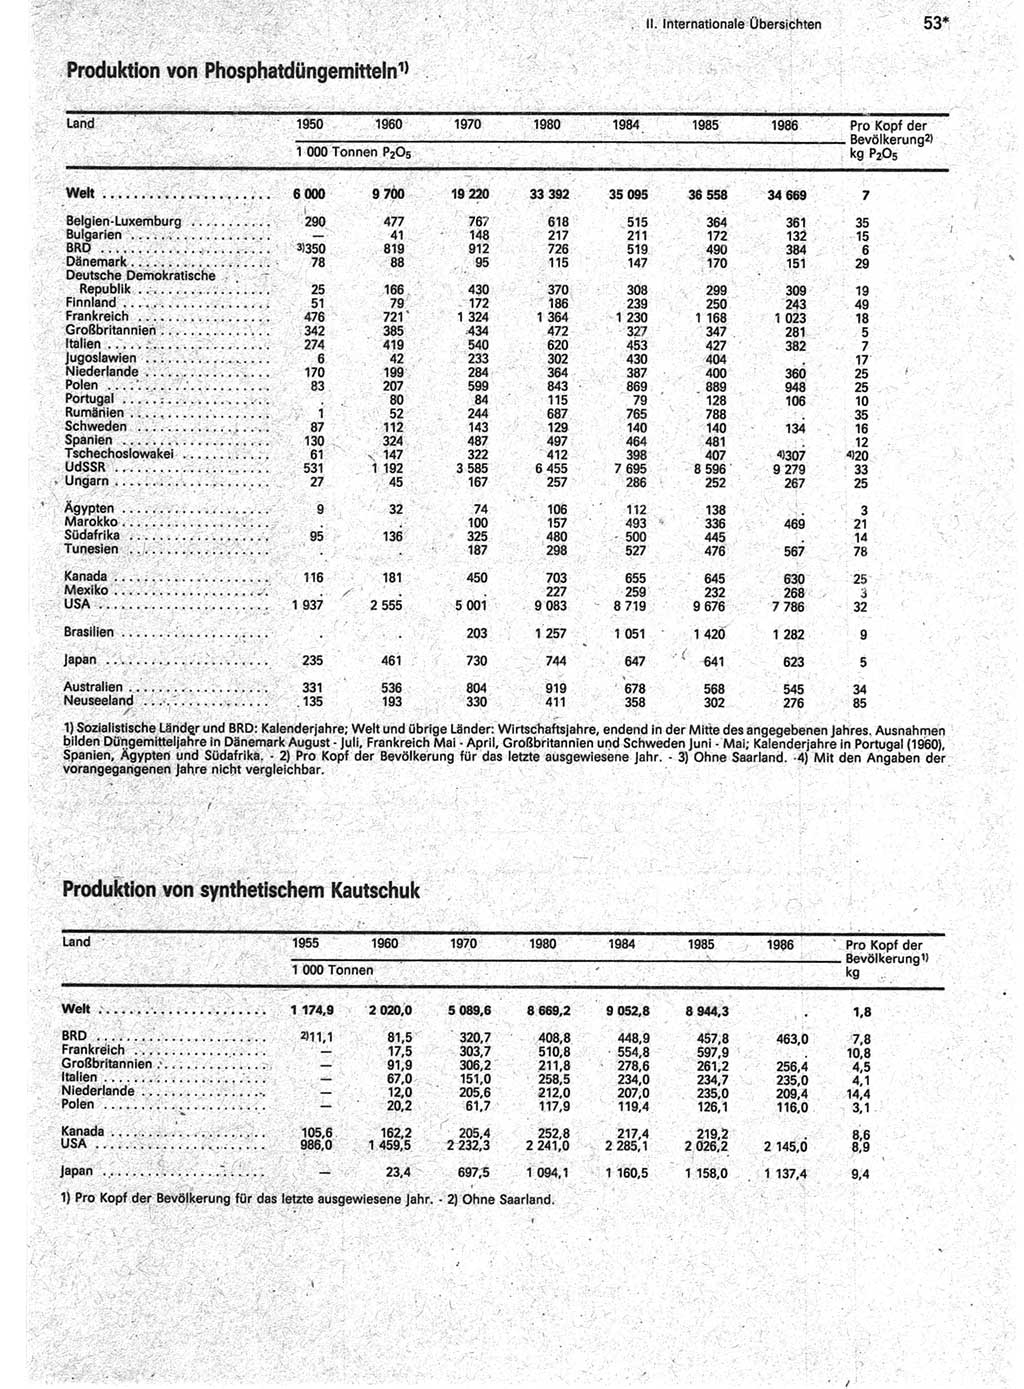 Statistisches Jahrbuch der Deutschen Demokratischen Republik (DDR) 1988, Seite 53 (Stat. Jb. DDR 1988, S. 53)